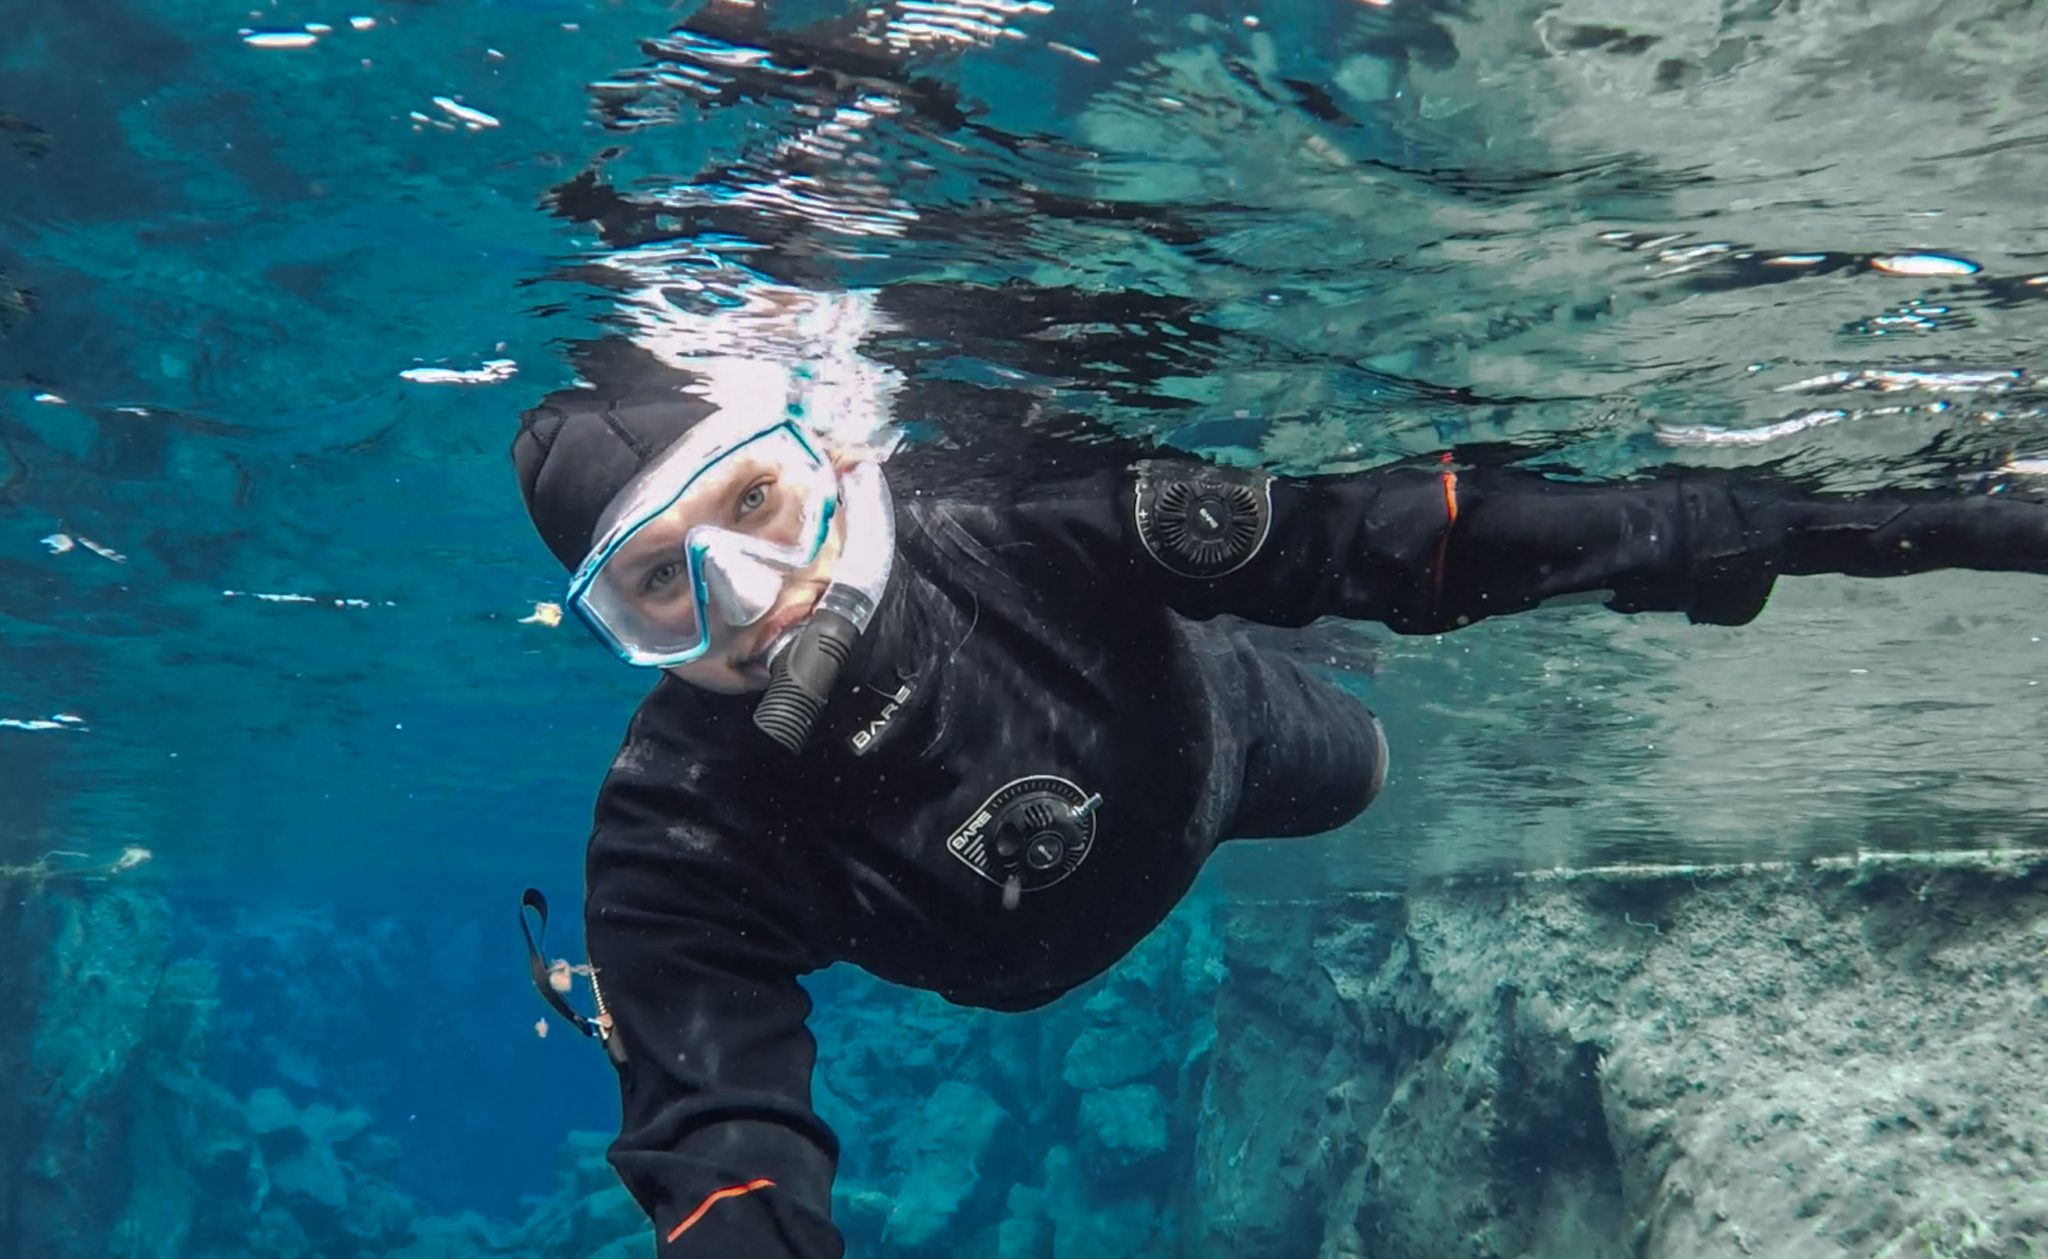 IJsland inspiratie snorkel selfie van der Linden